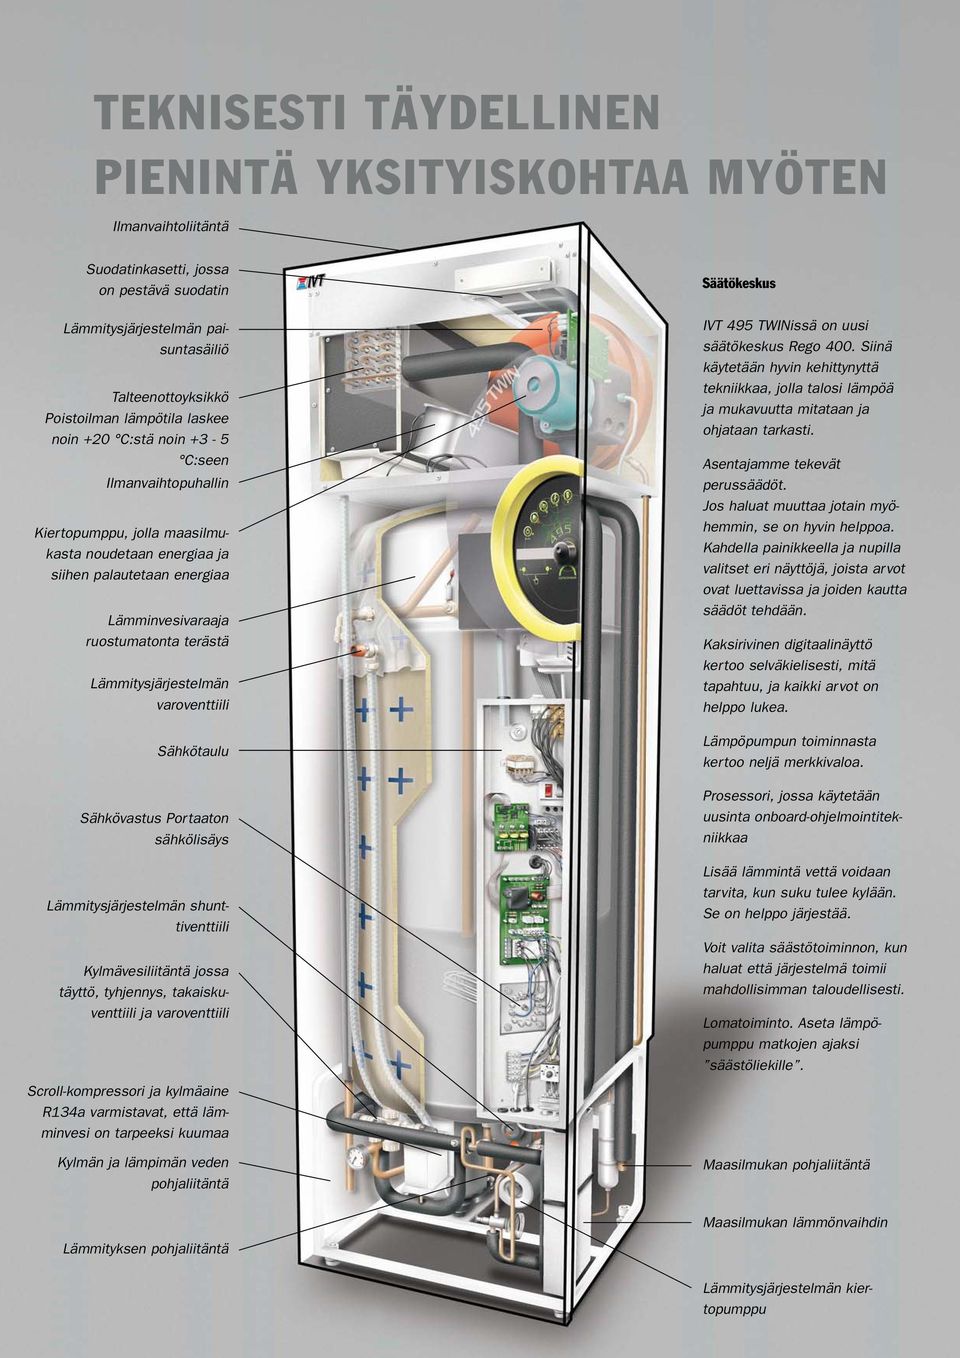 Lämmitysjärjestelmän varoventtiili Sähkötaulu Sähkövastus Portaaton sähkölisäys Lämmitysjärjestelmän shunttiventtiili Kylmävesiliitäntä jossa täyttö, tyhjennys, takaiskuventtiili ja varoventtiili